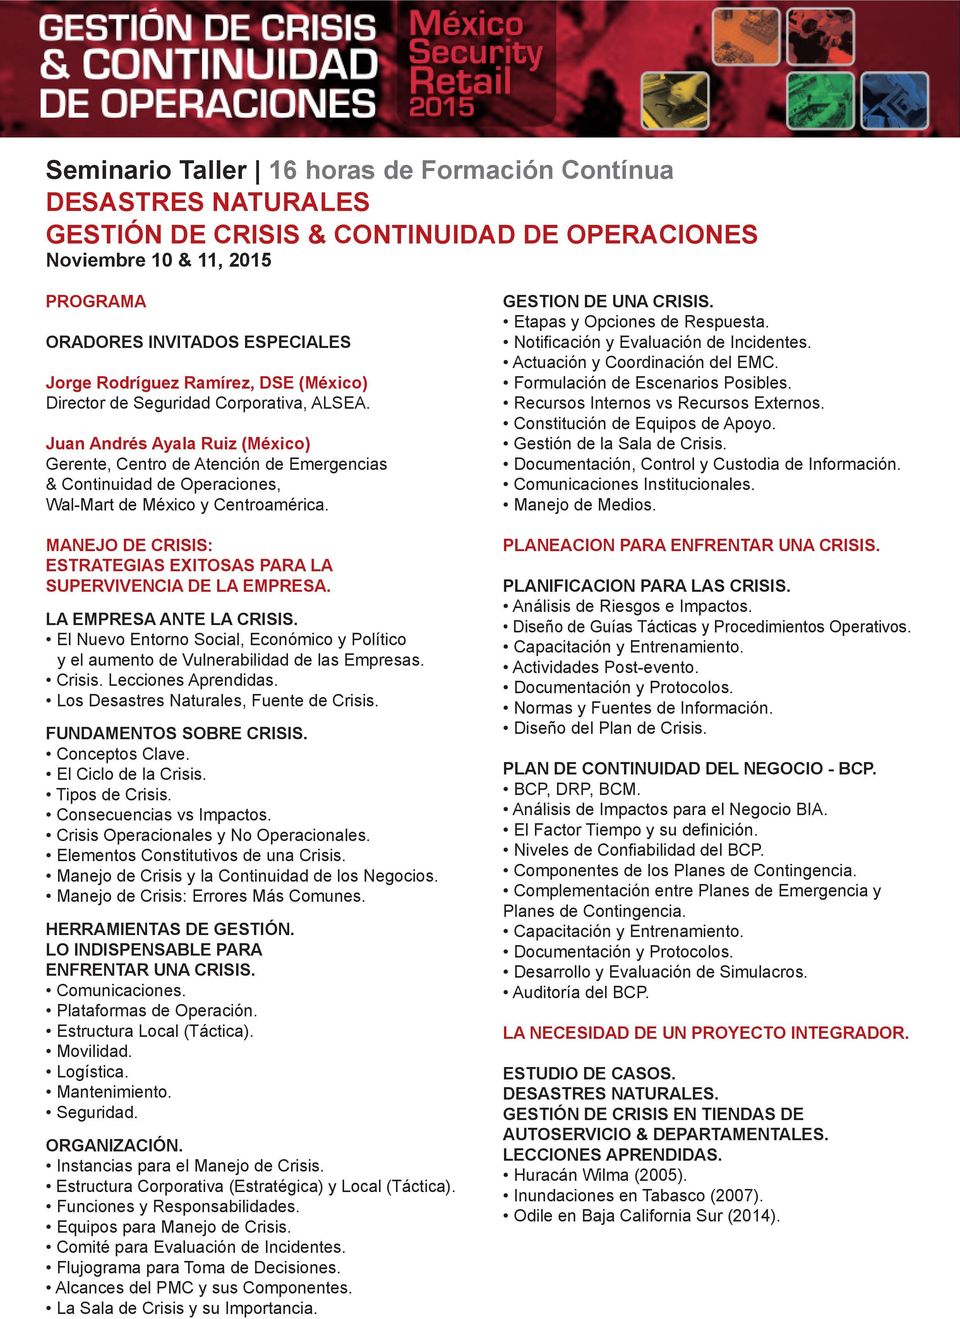 Juan Andrés Ayala Ruiz (México) Gerente, Centro de Atención de Emergencias & Continuidad de Operaciones, Wal-Mart de México y Centroamérica.